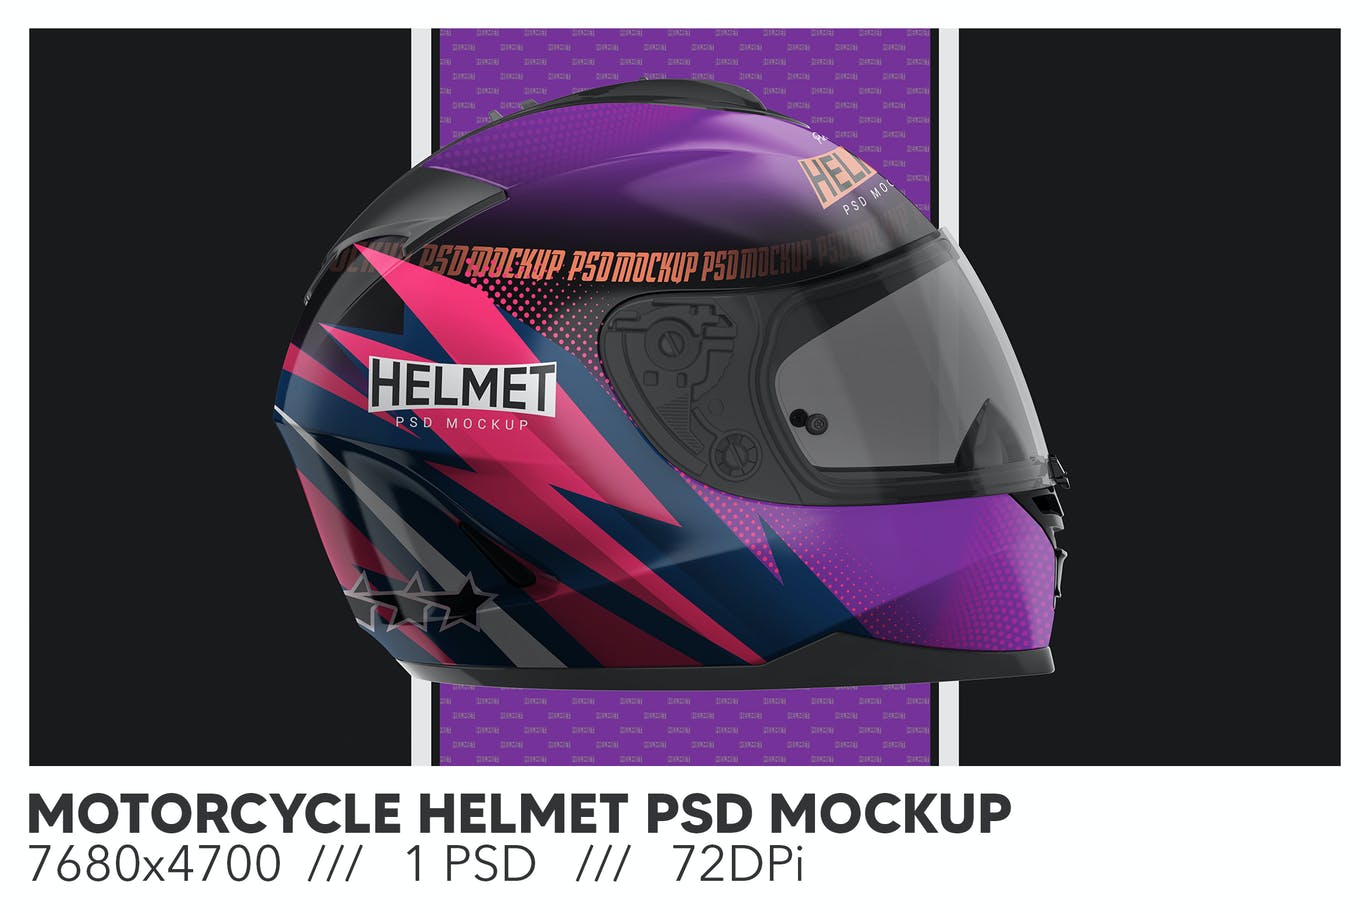 摩托车头盔模型样机 (PSD)